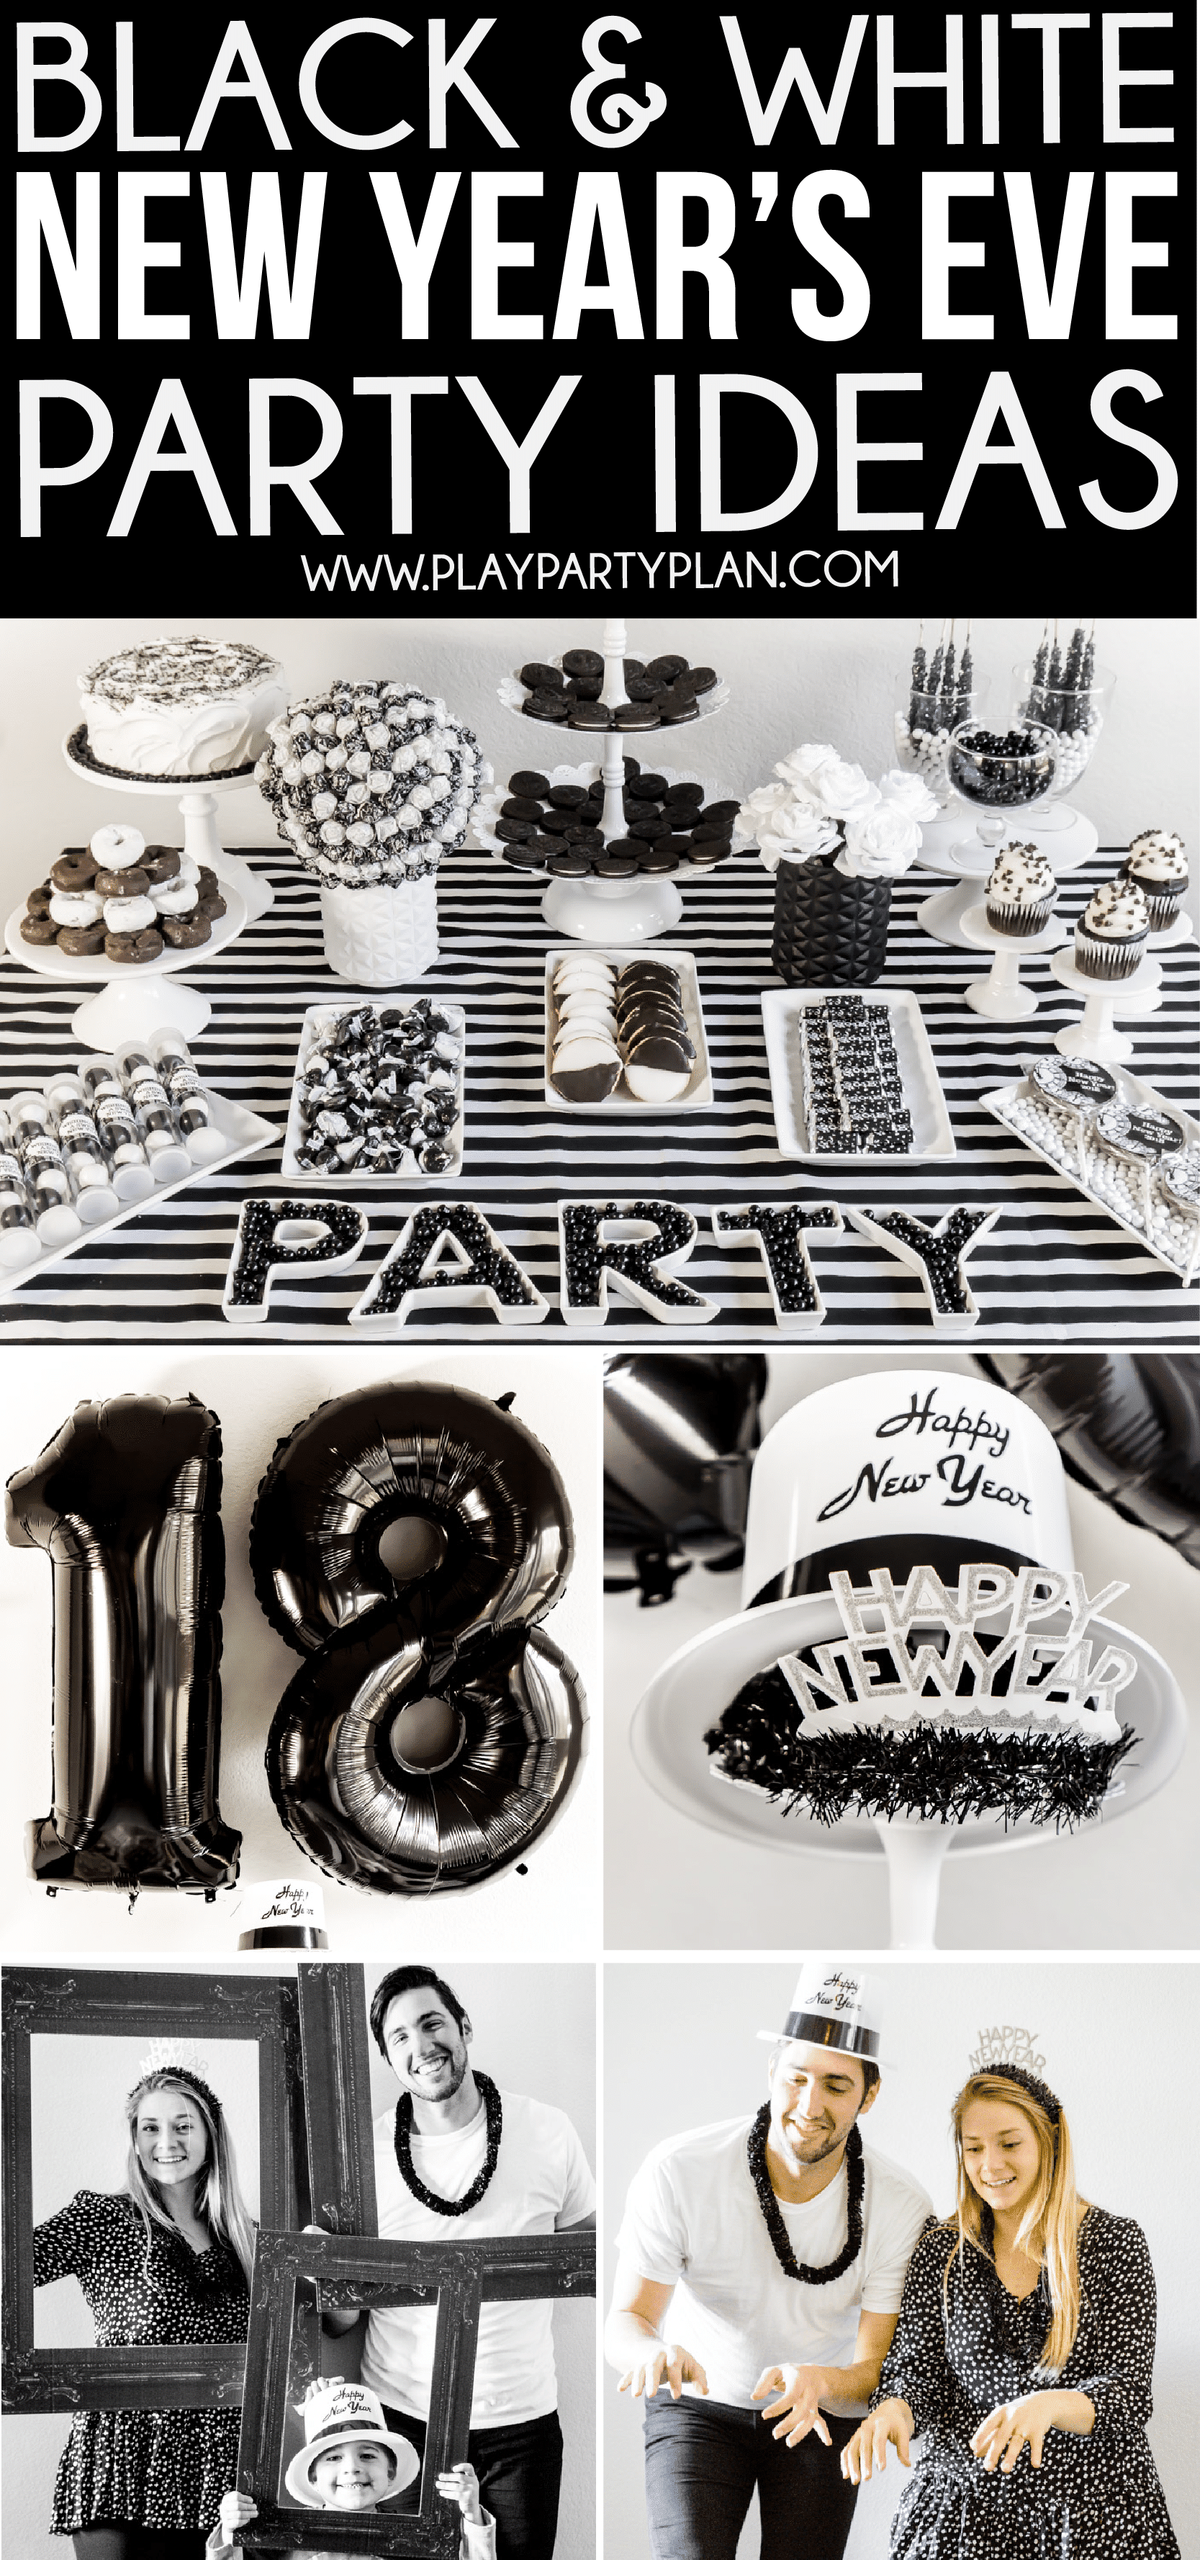 Ótimas ideias de festas em preto e branco para o ano novo